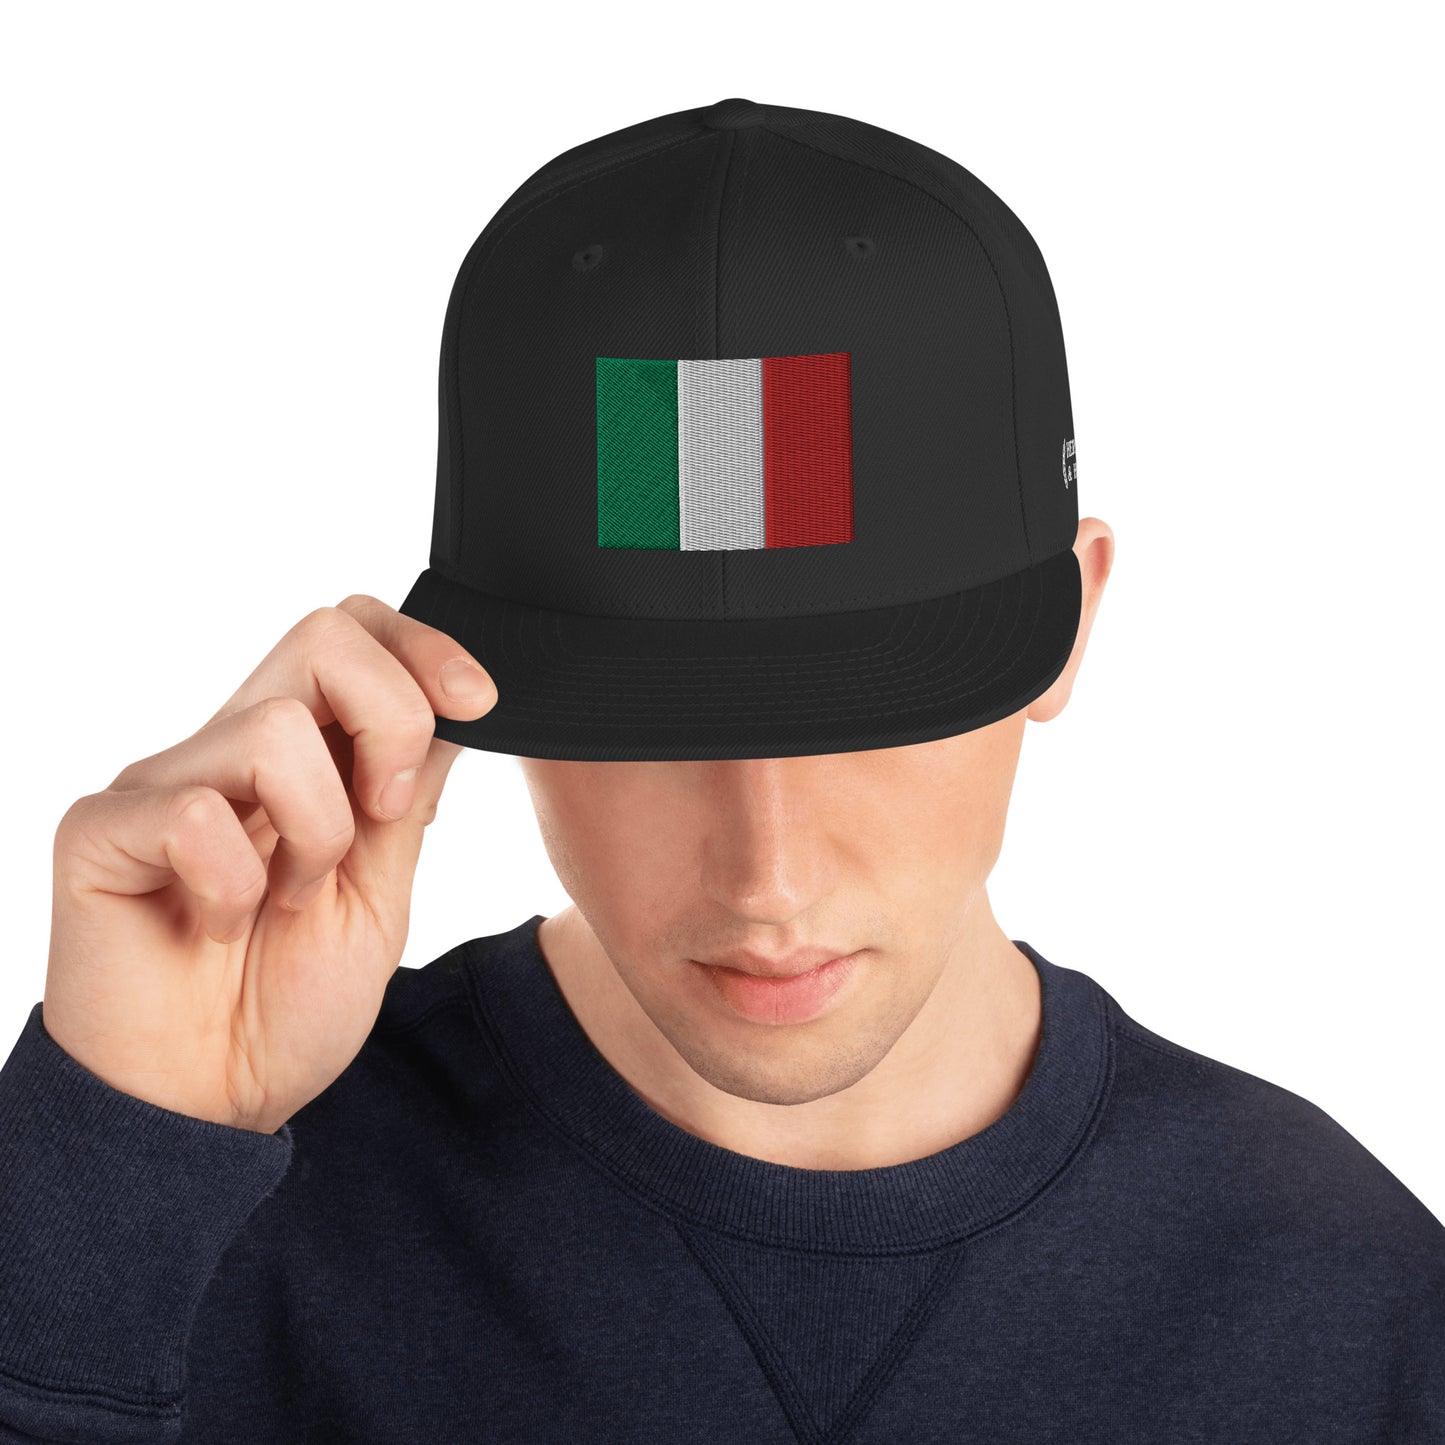 Heritage & Honor Snapback Cap 'Italy' 2